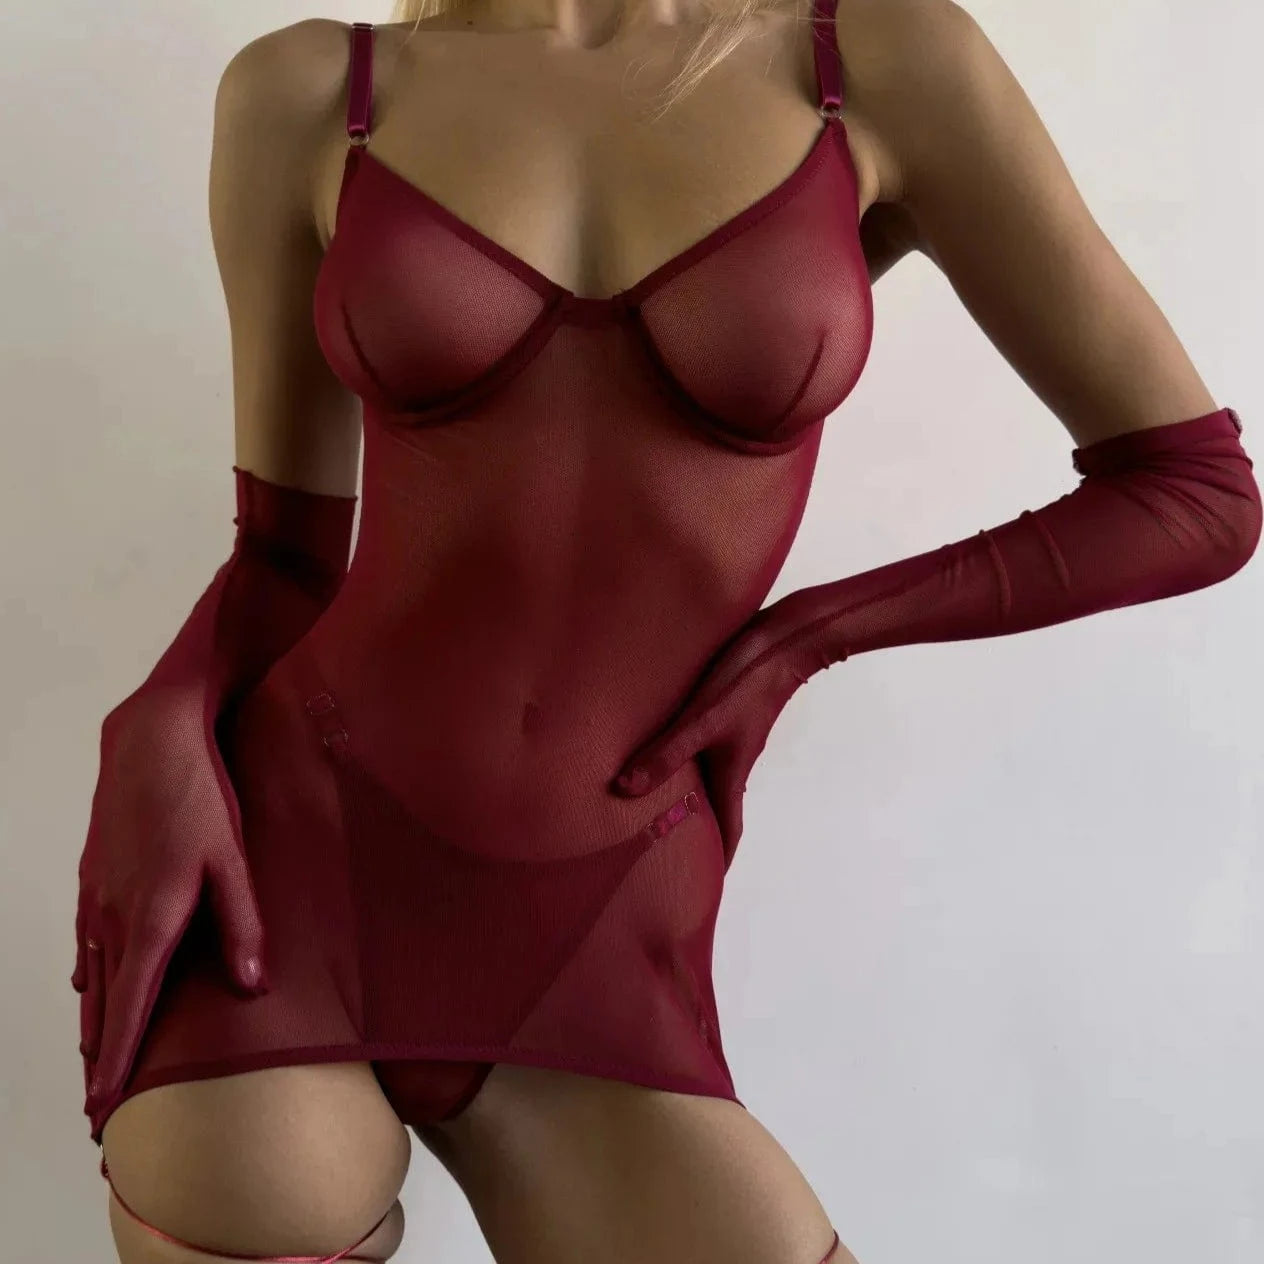 Kinky Cloth 4-Piece Sheer Backless Lingerie Set